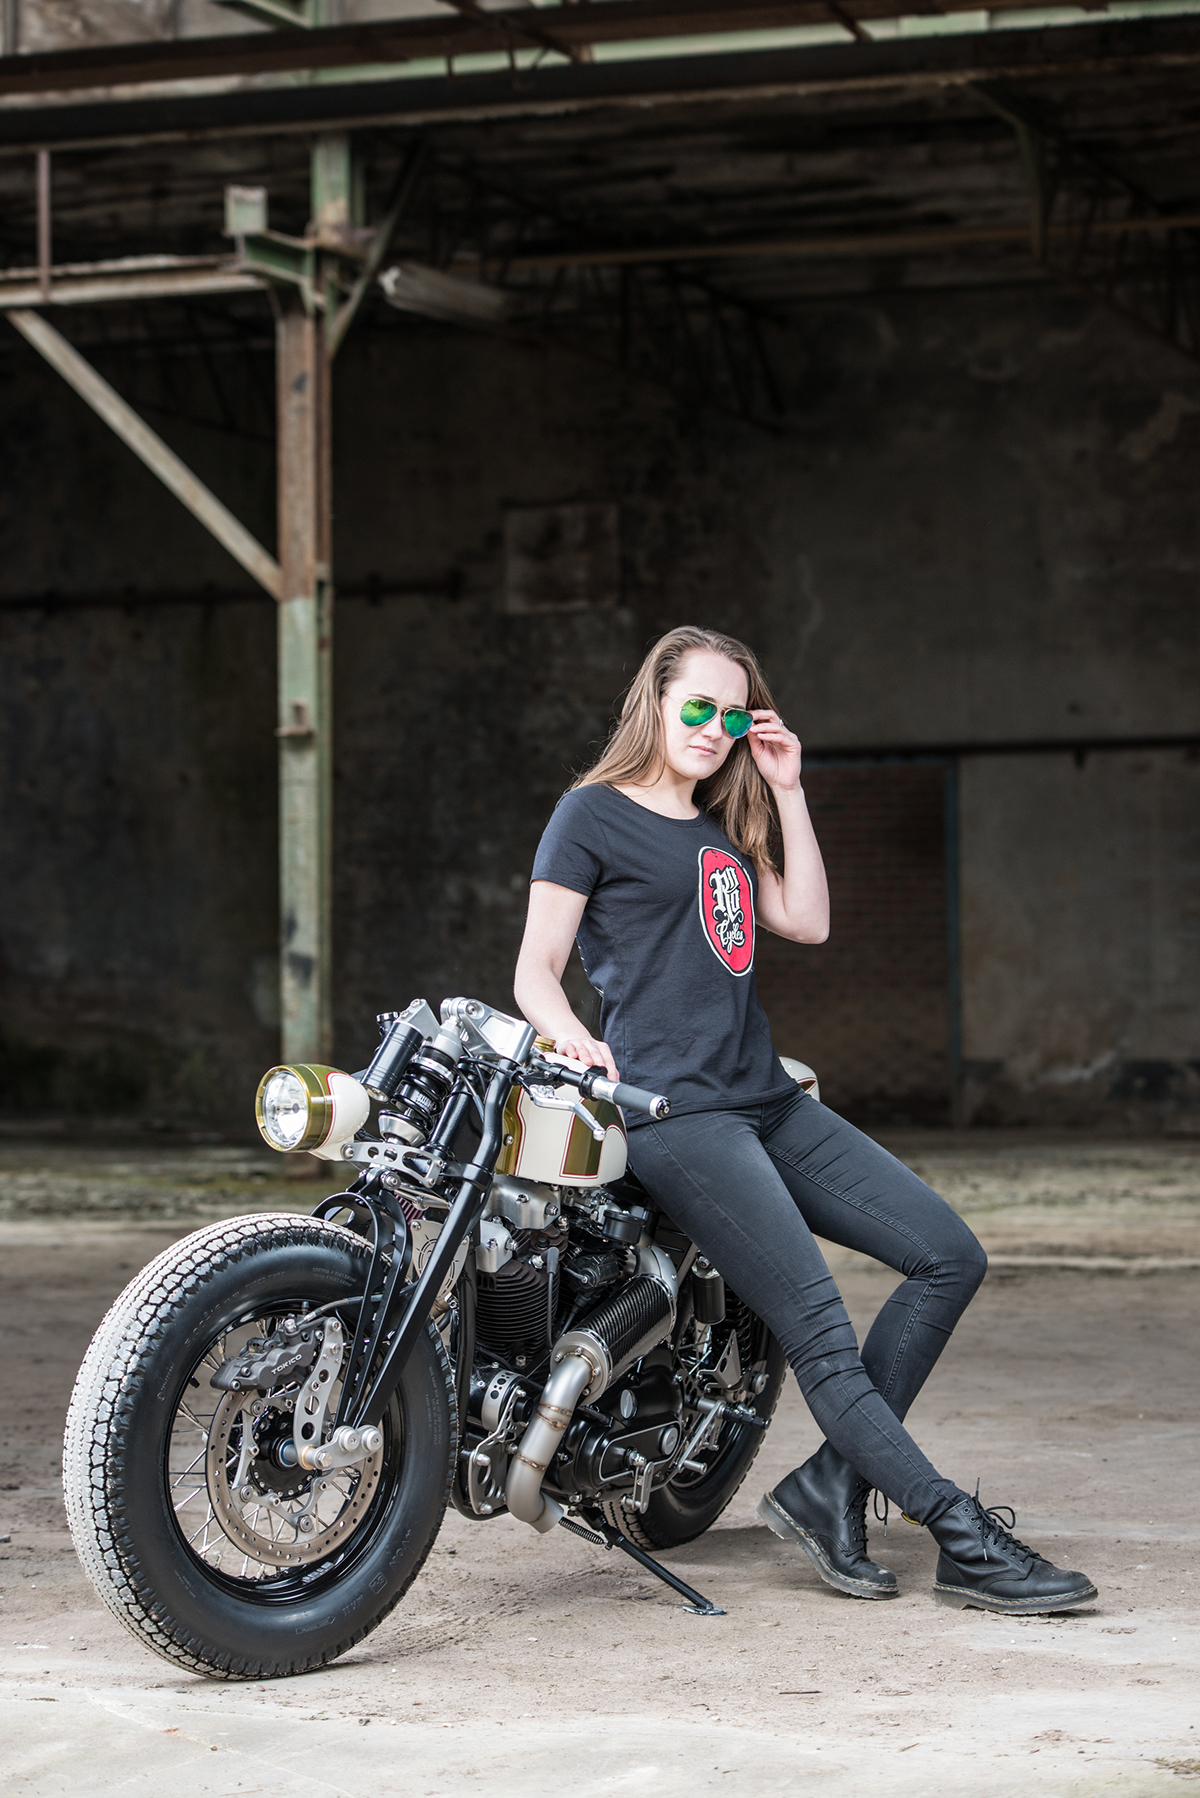 Custom Motorcycle Build Rno Cycles Harley Davidson